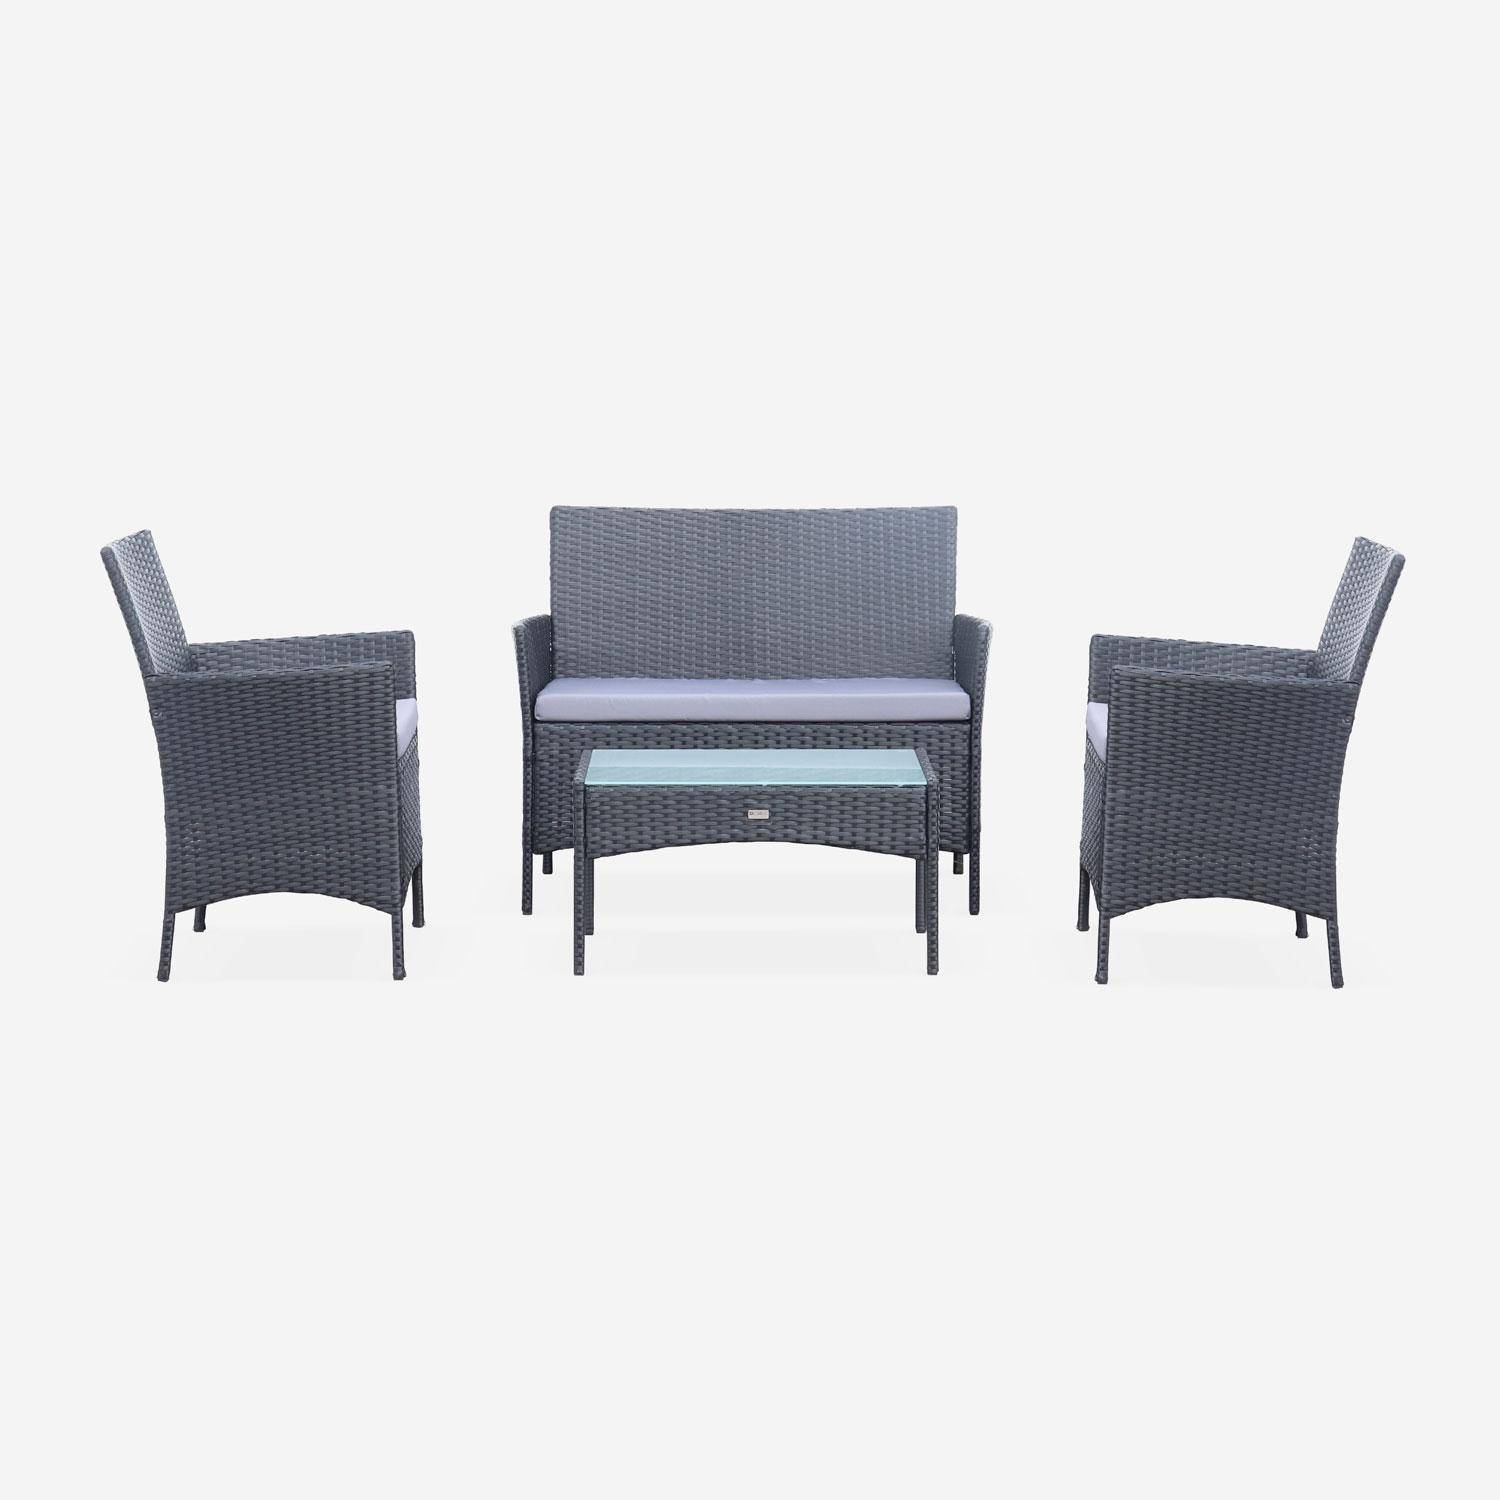 Salotto da giardino in resina intrecciata - modello: Moltès - colore: Nero, cuscini, colore: Grigio - 4 posti - 1 divano, 2 poltrone, un tavolino  basso Photo2